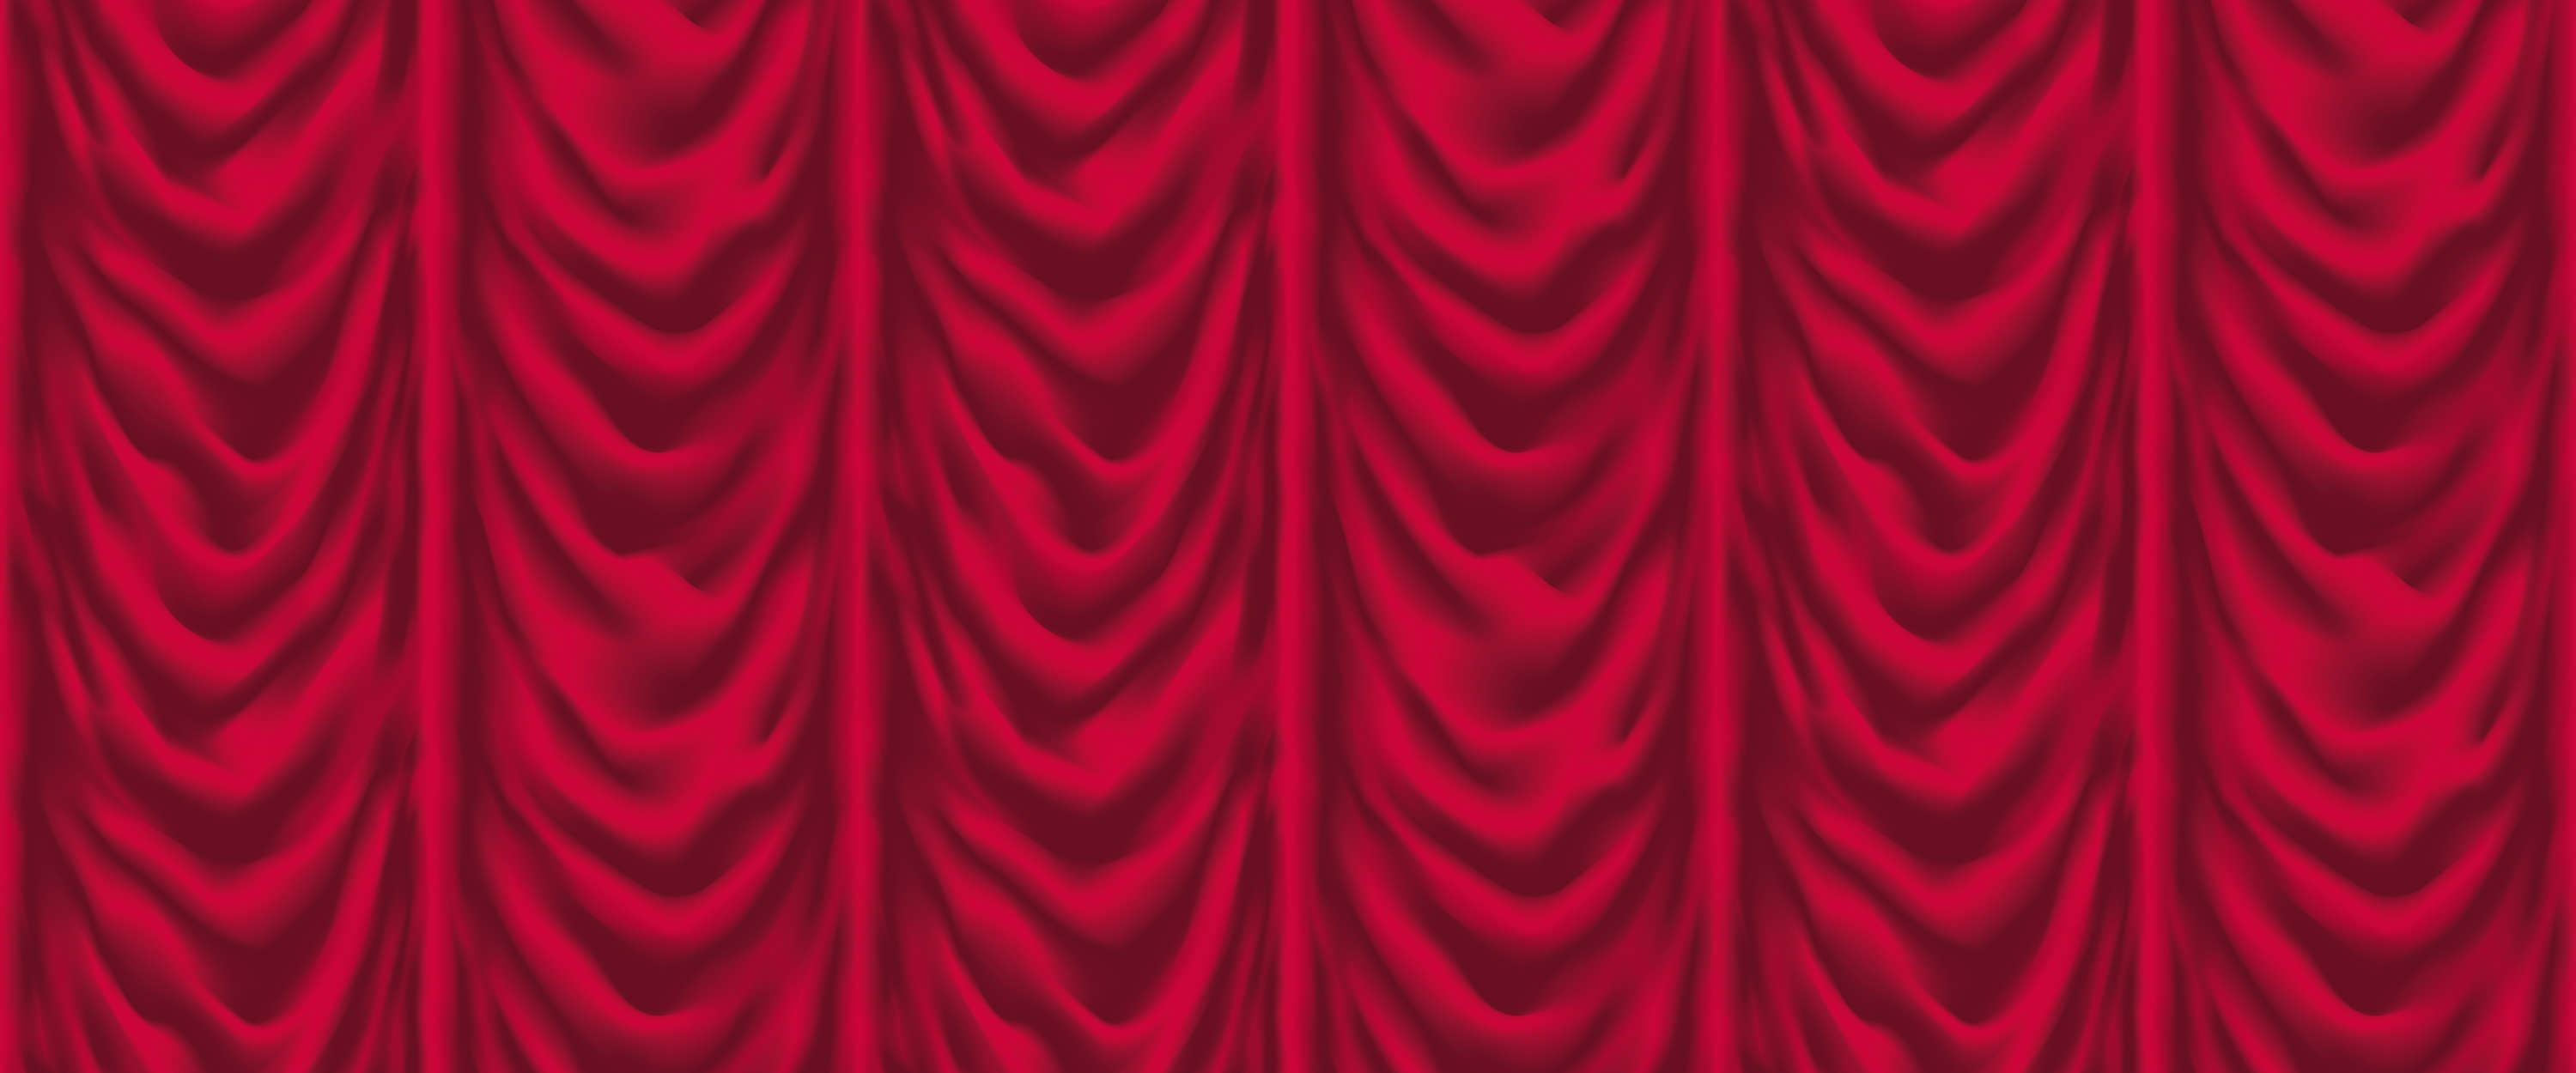             Tenda di velluto rosso con drappeggio a balze
        